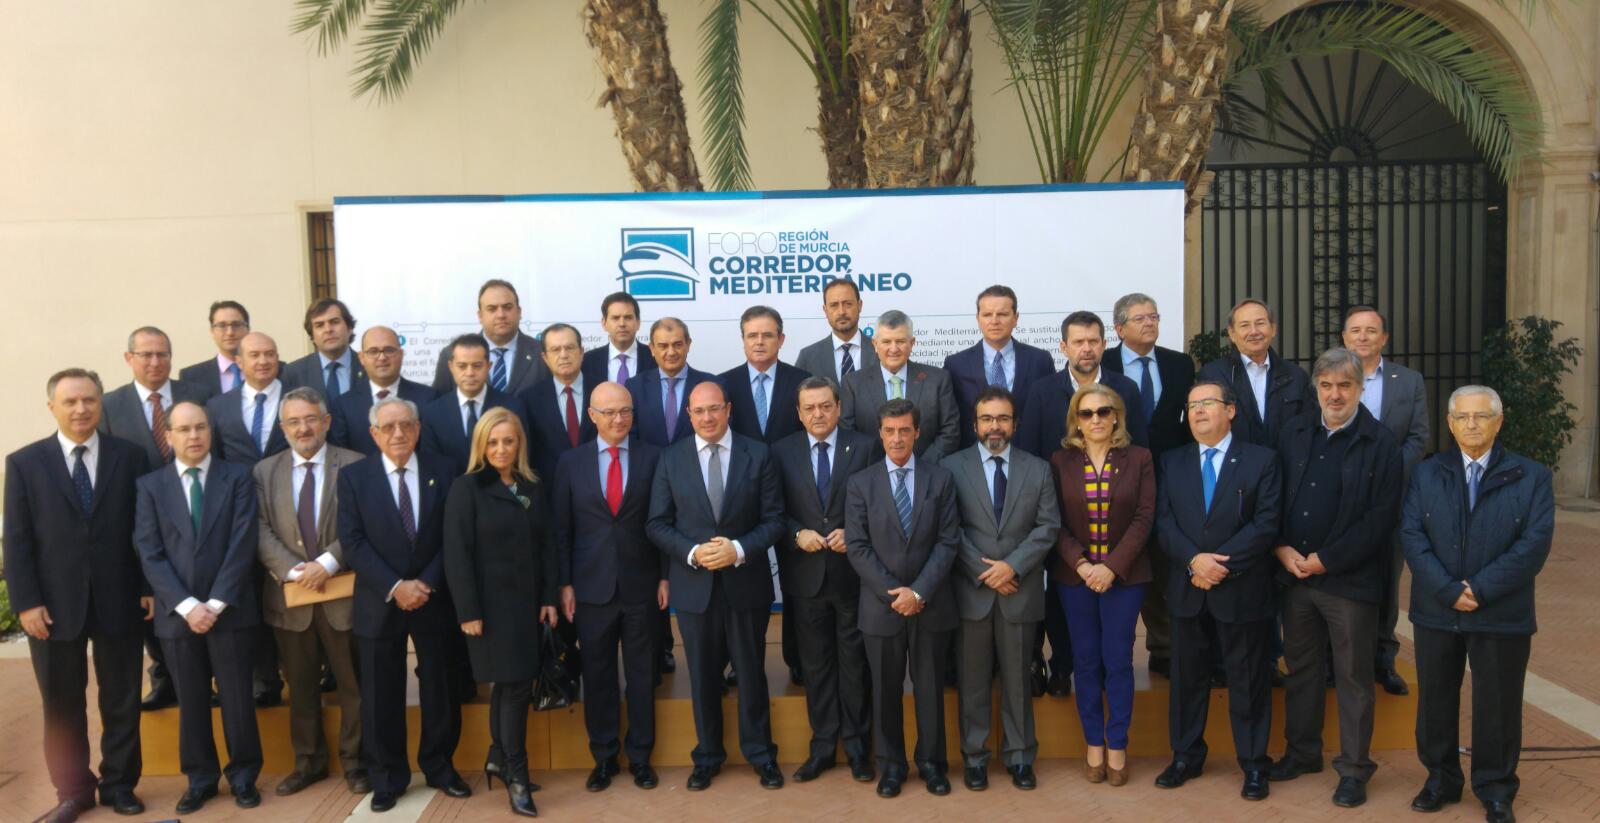 TIMUR participa en el Foro Región de Murcia Corredor Mediterráneo